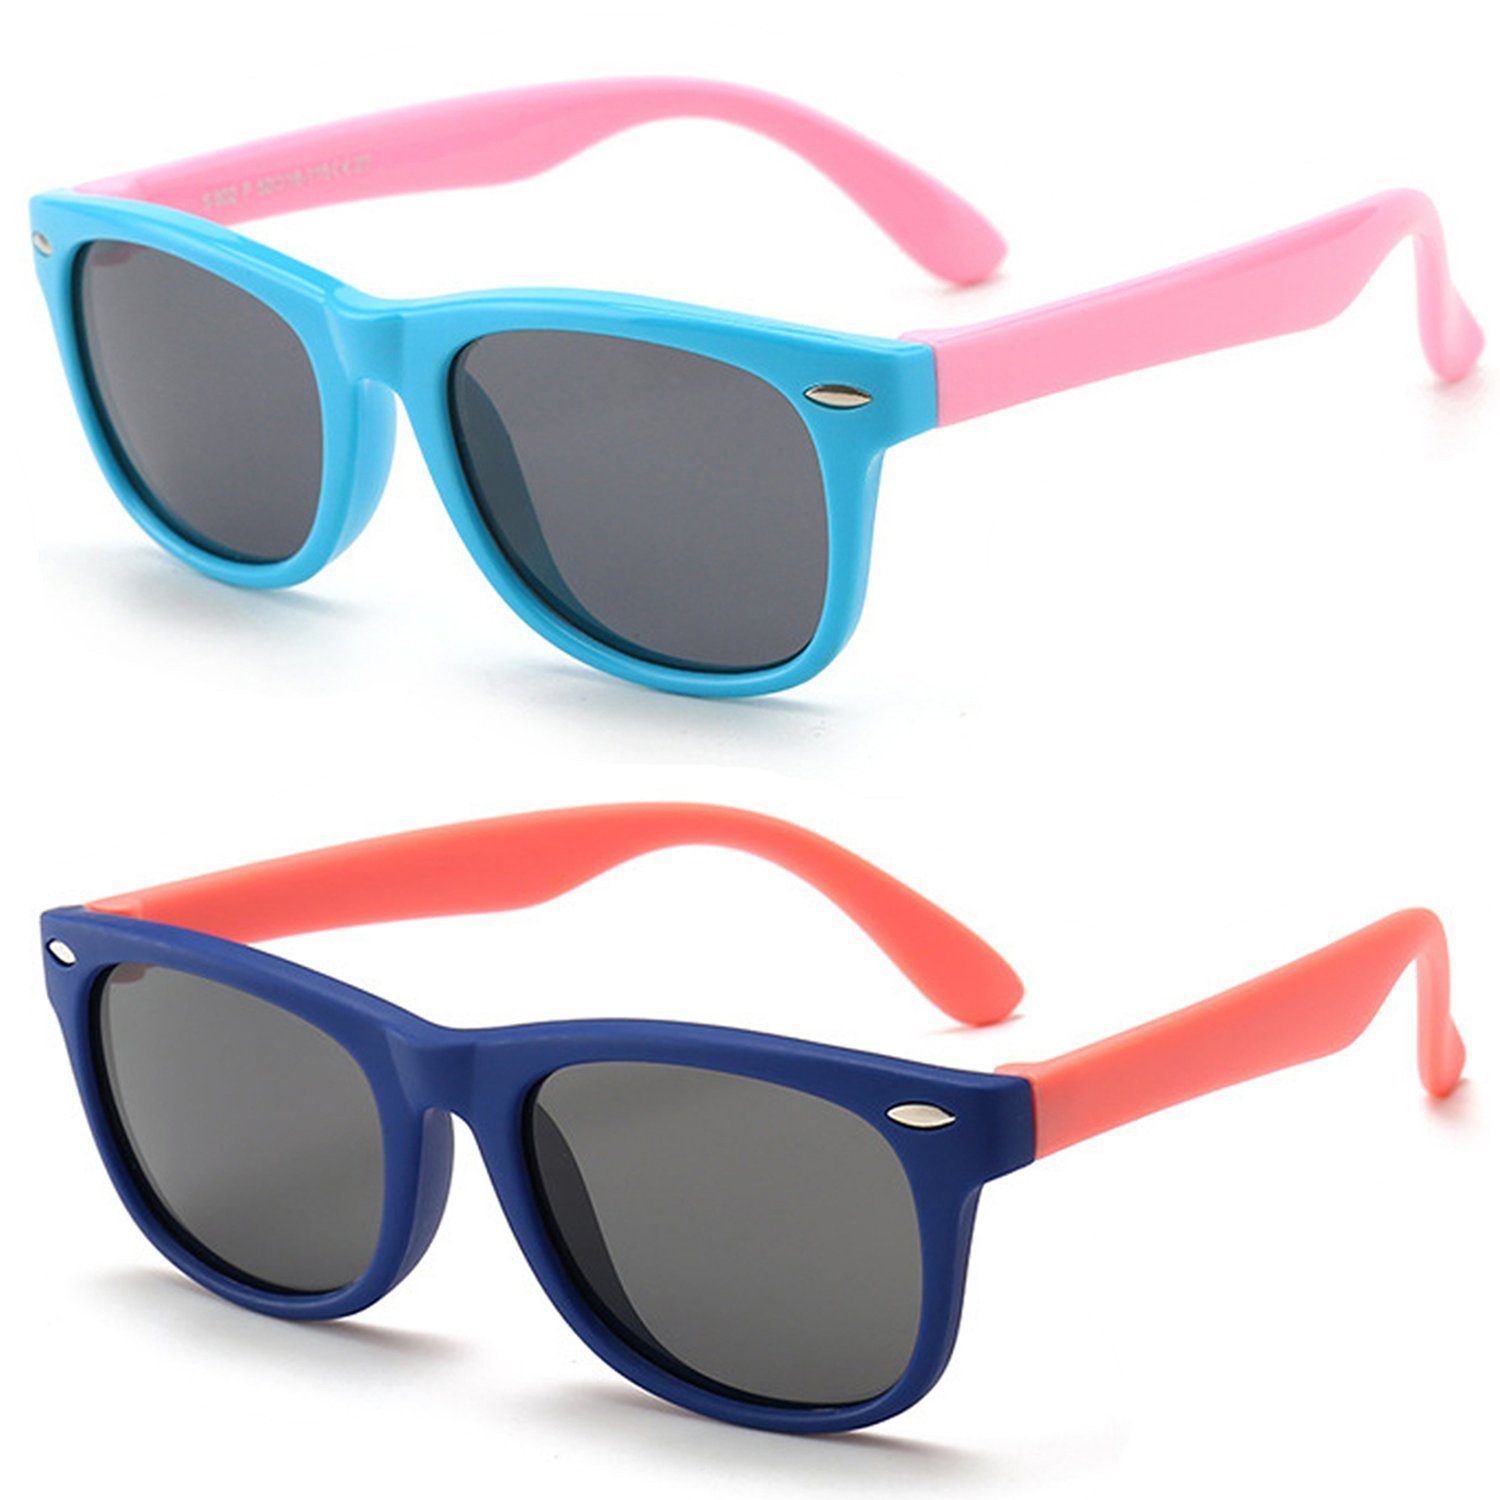 Sonnenbrille Brille Mädchen Jungen Gummi Hellblau+Dunkelblau Sonnenbrille Schutz 100% UV400 Kinder Olotos für